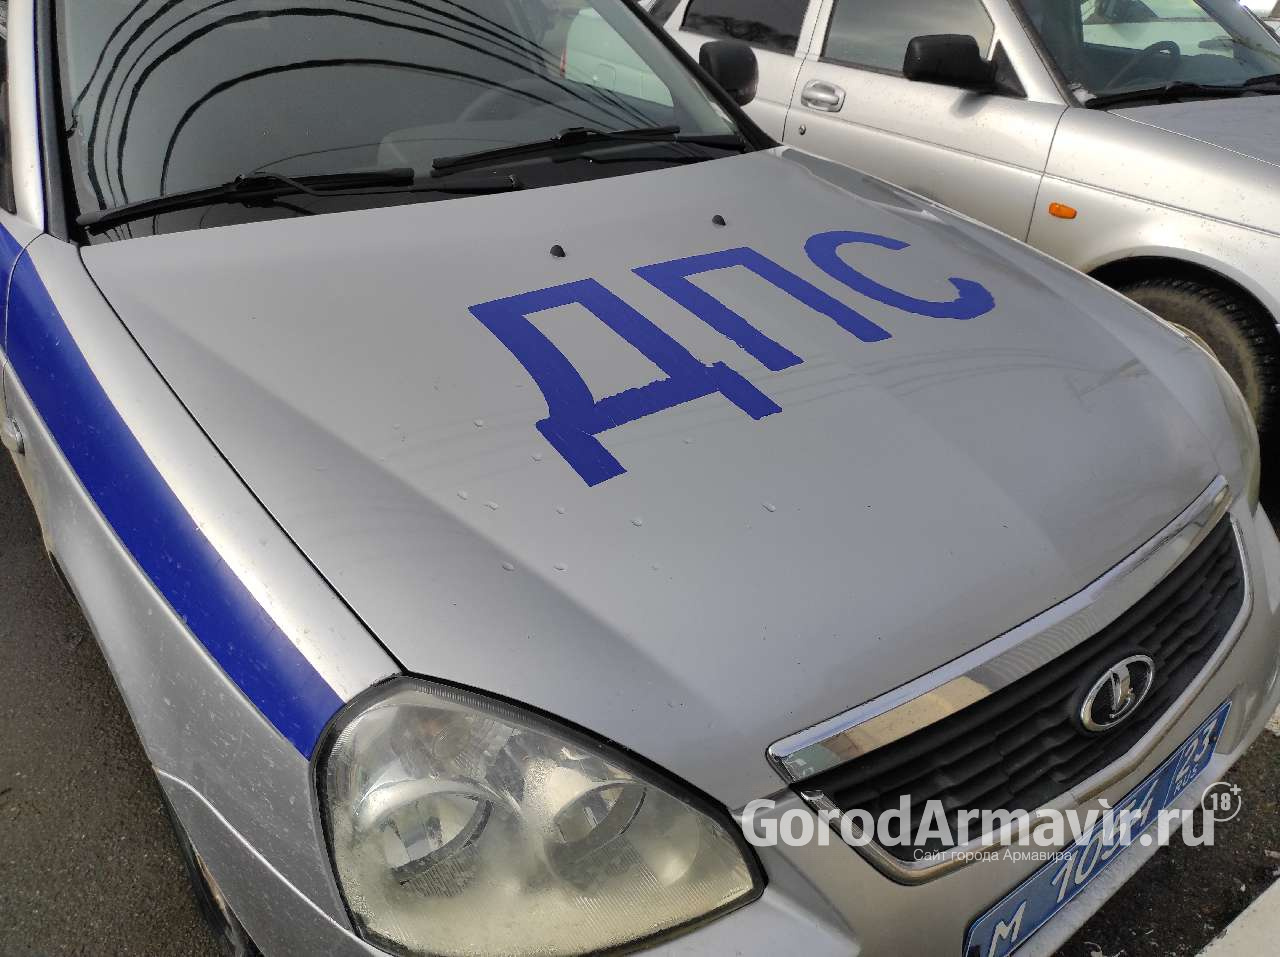  За незаконную деятельность в Армавире арестованы 2 машины такси 